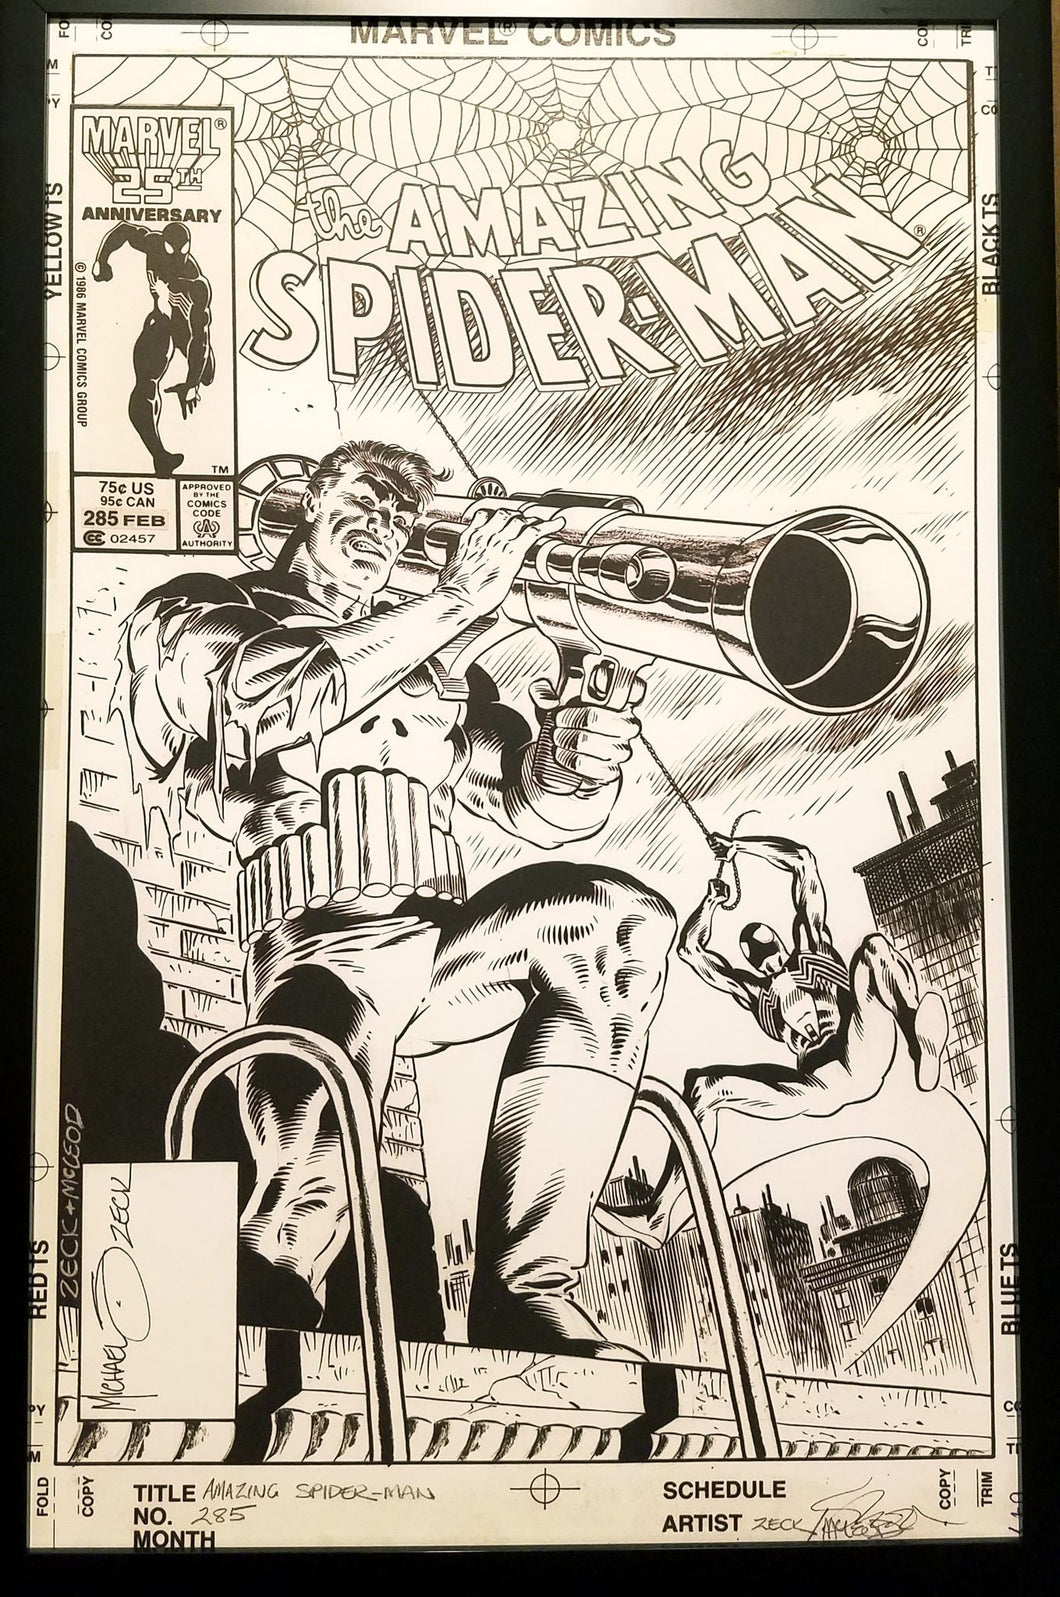 Amazing Spider-Man #285 w/ Punisher Zeck 11x17 FRAMED Original Art Poster Marvel Comics